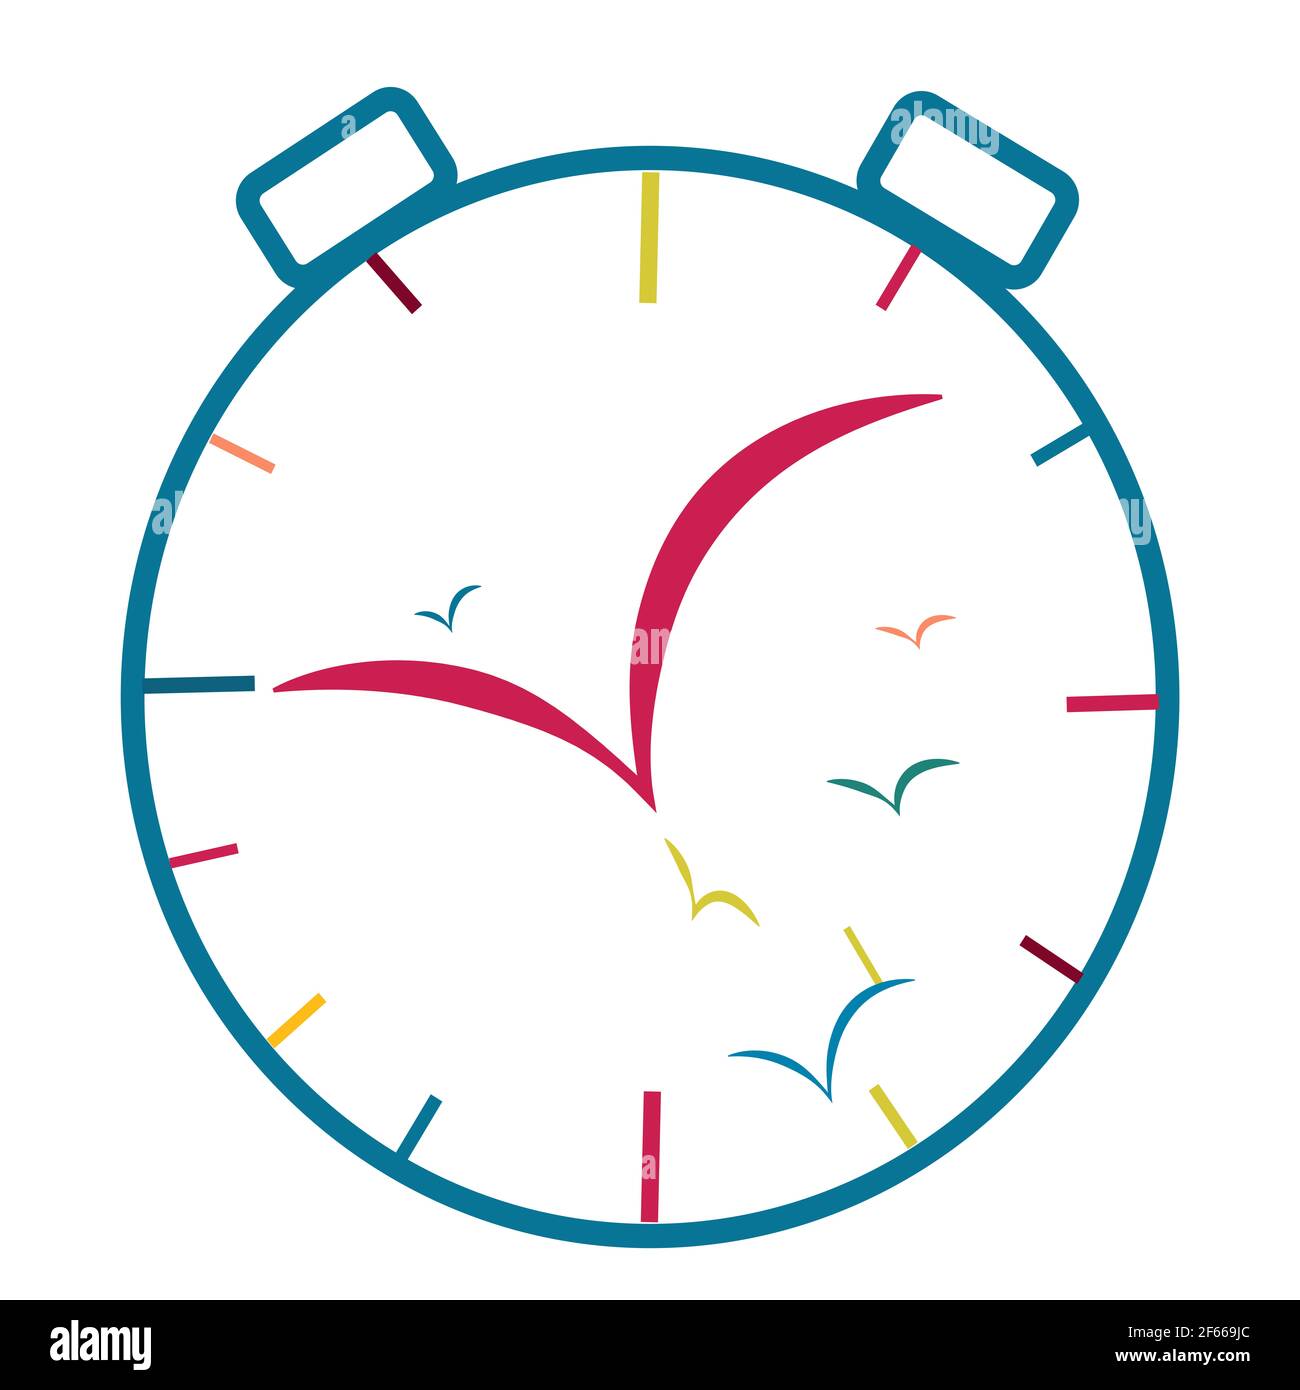 Illustration einer Uhr aus Vögeln, für die surrealistische Vorstellung,  dass Zeit subjektiv ist Stockfotografie - Alamy